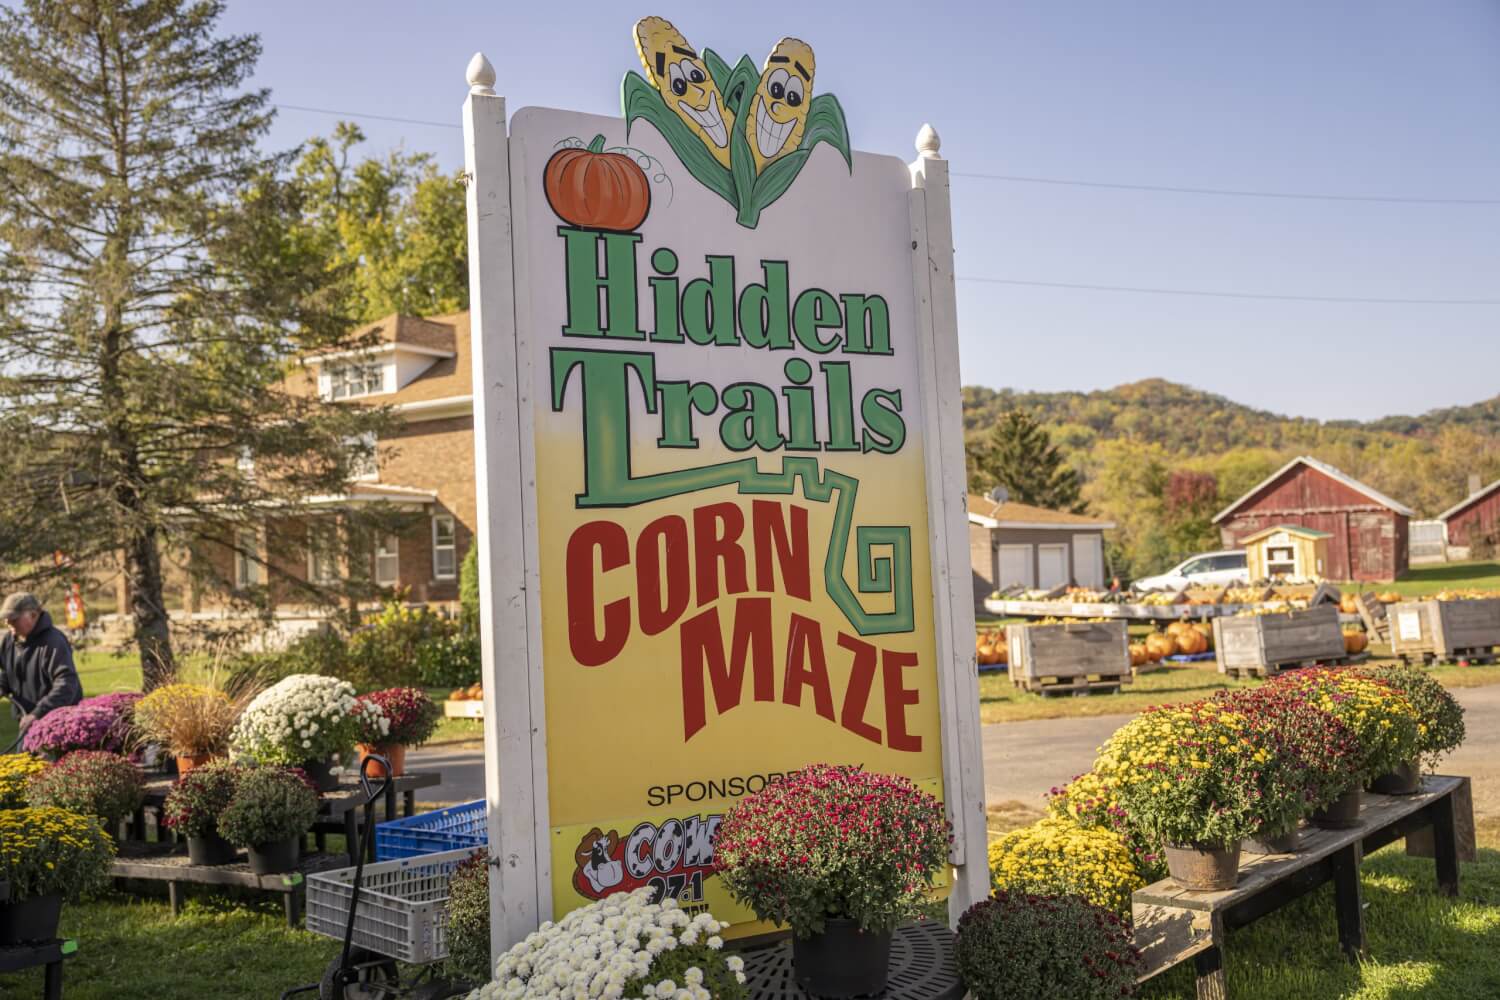 Hidden trails corn maze sign